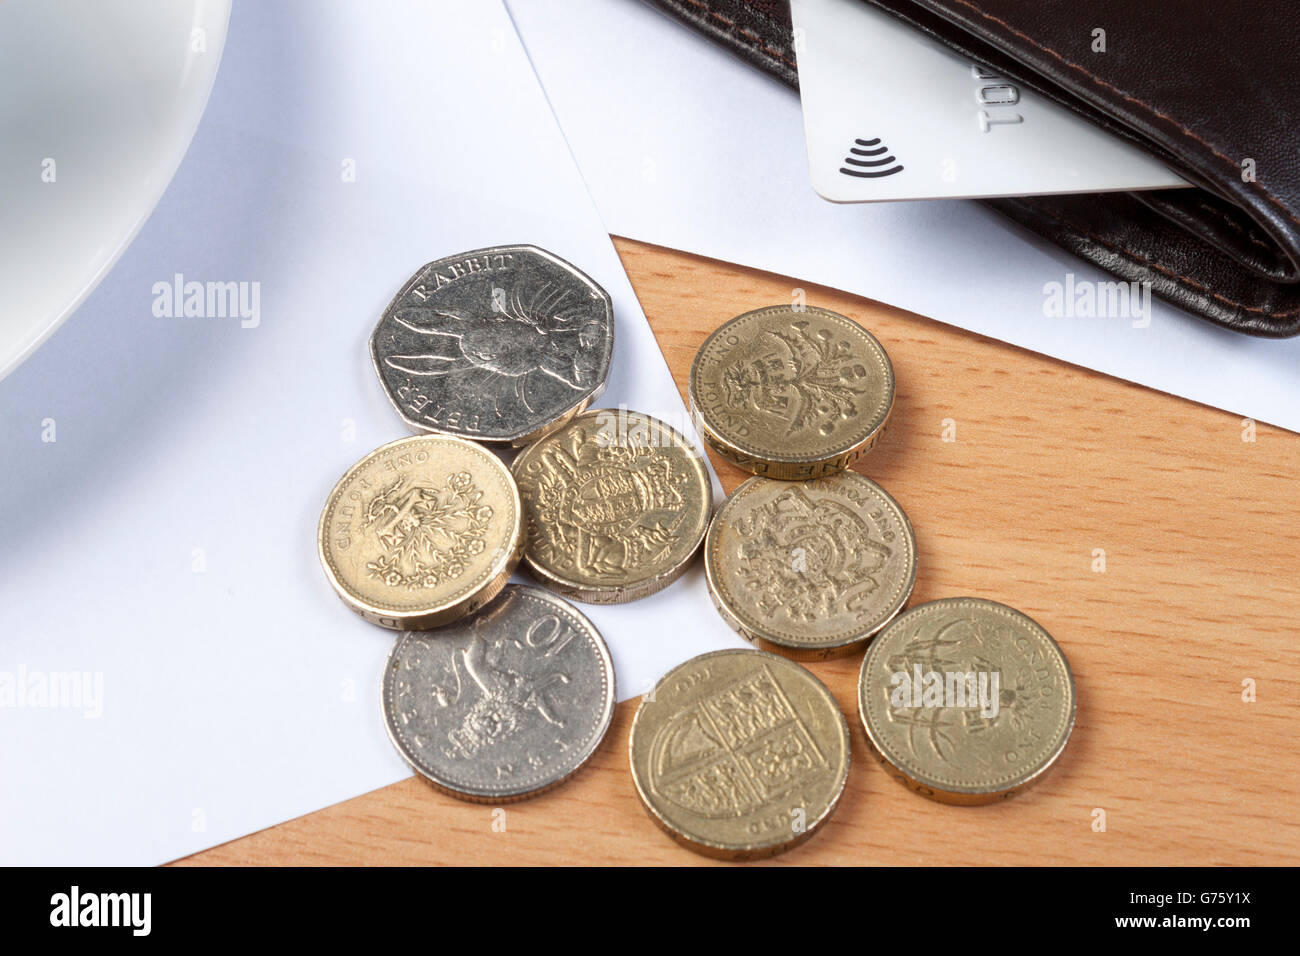 Schuss von einigen Münzen neben eine Brieftasche mit einer Kreditkarte darin auf ein Buchhalter Schreibtisch Nahaufnahme Stockfoto